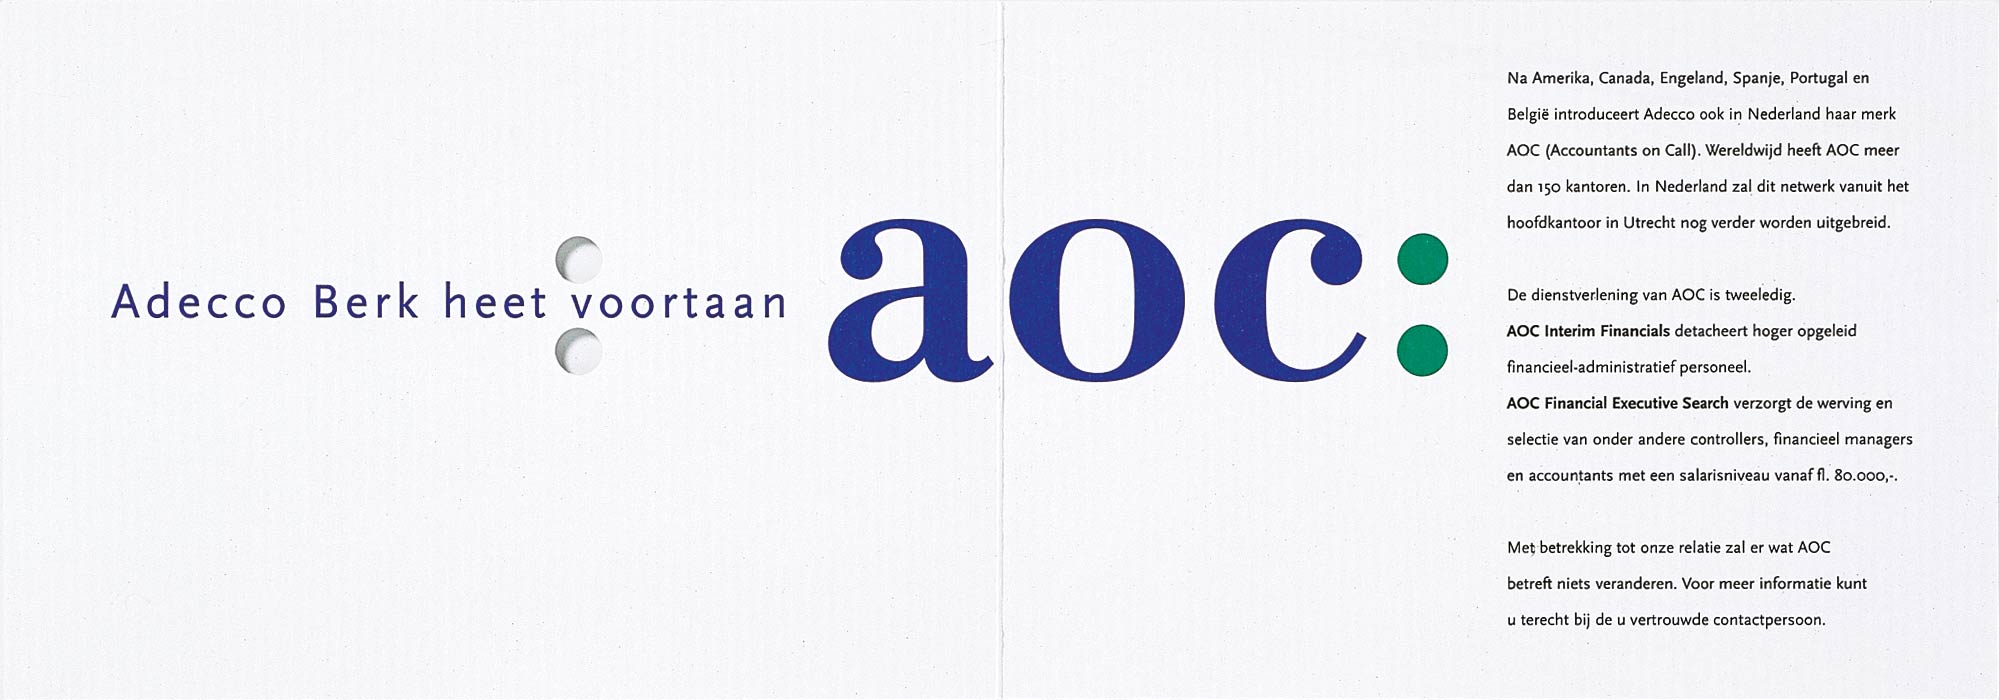 adecco branding